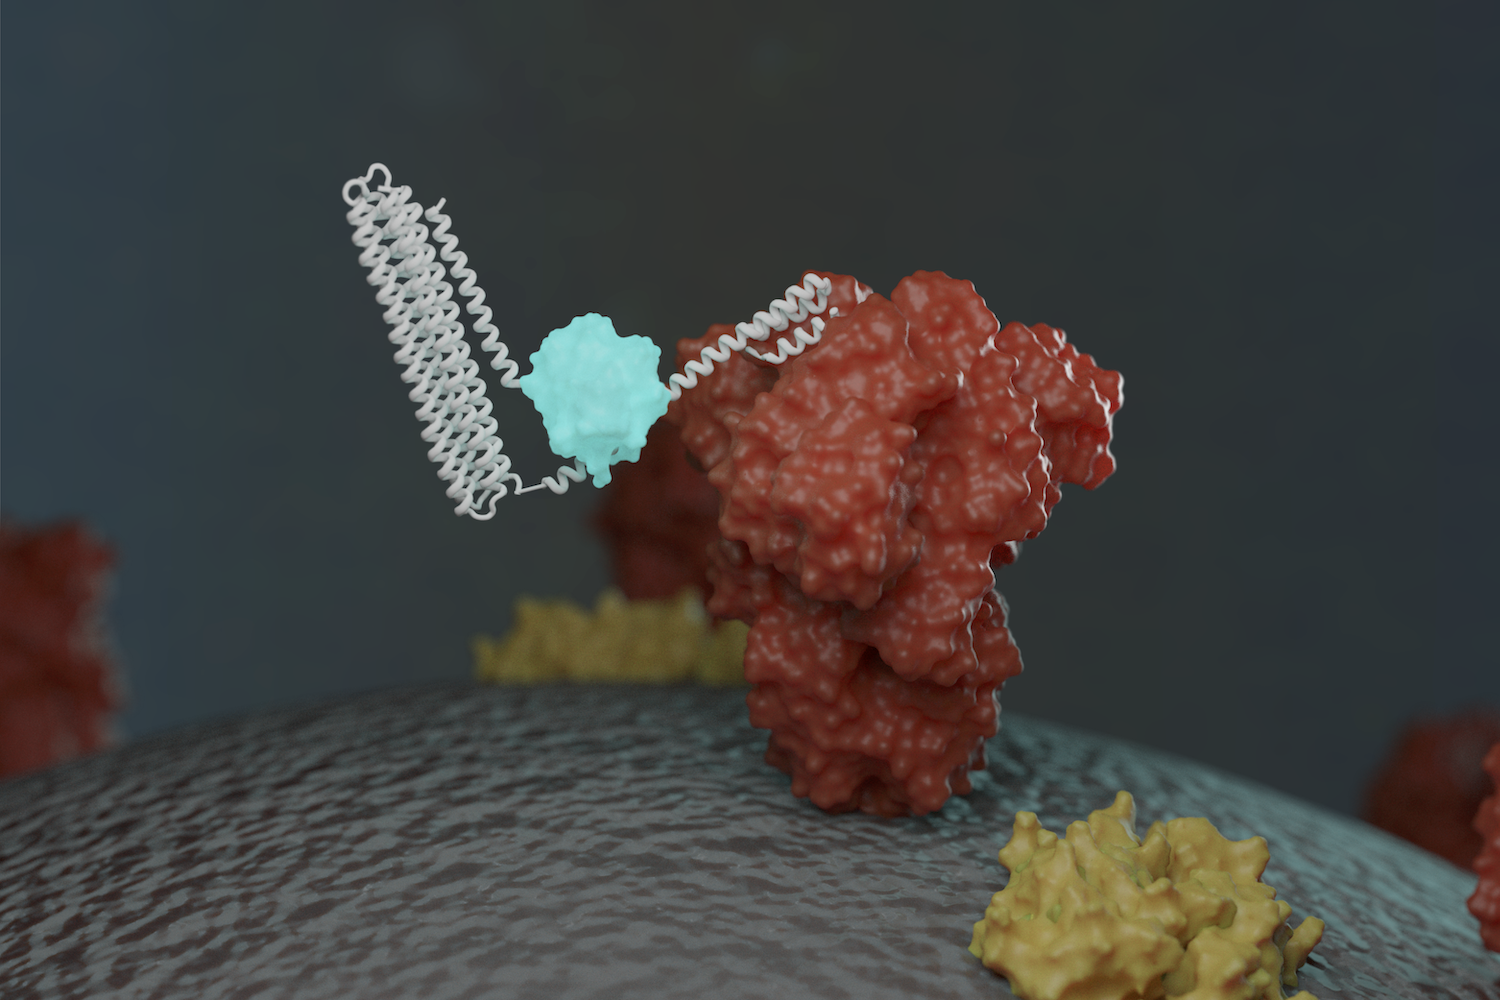 New sensors detect coronavirus proteins and antibodies